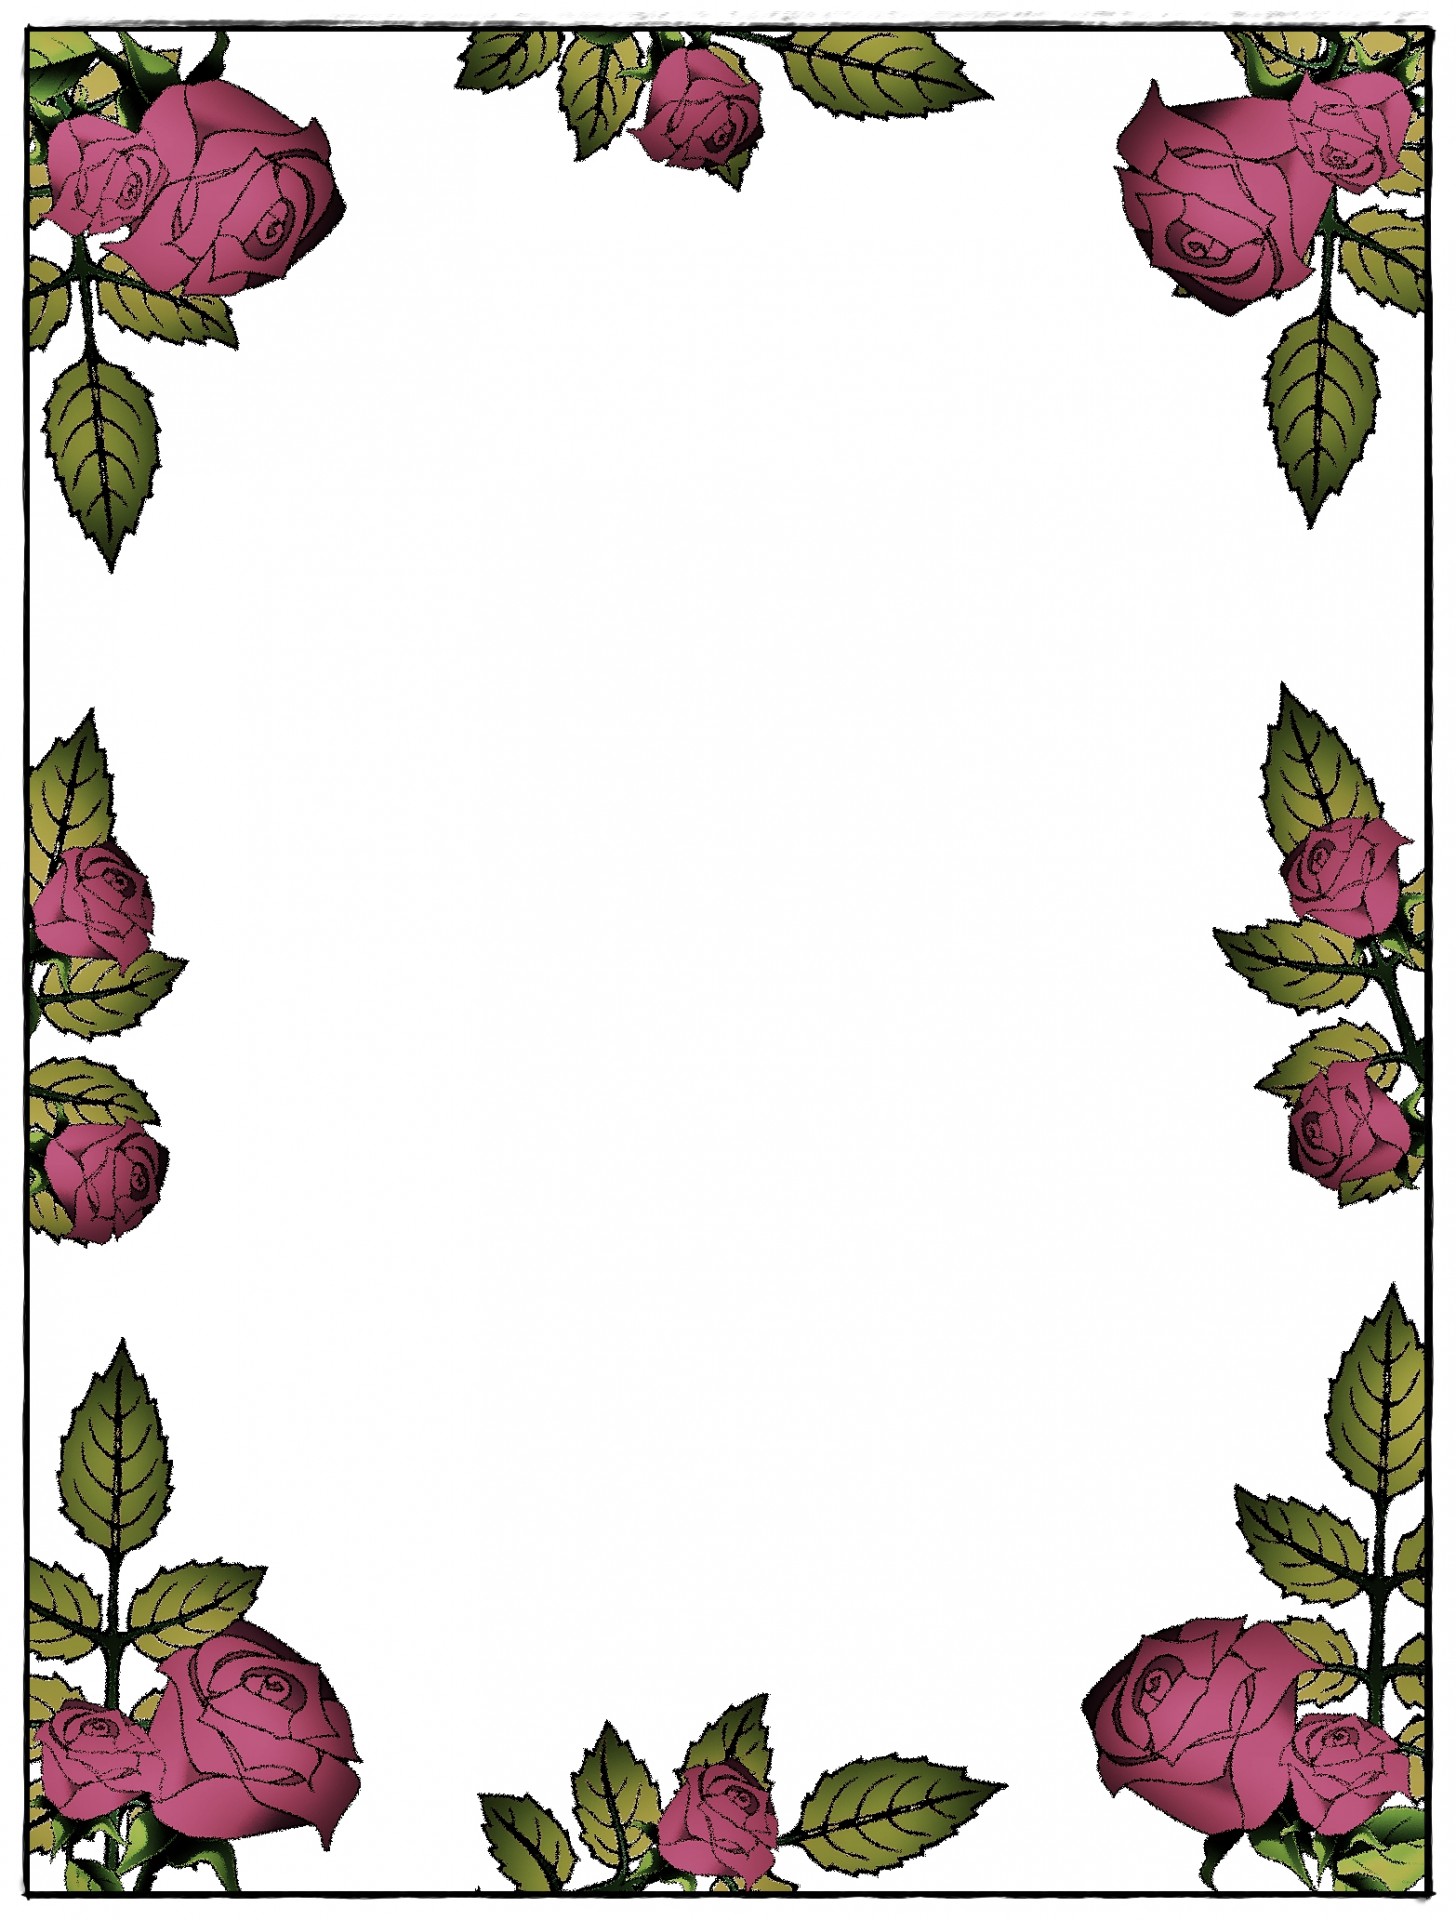 background rose stationery free photo